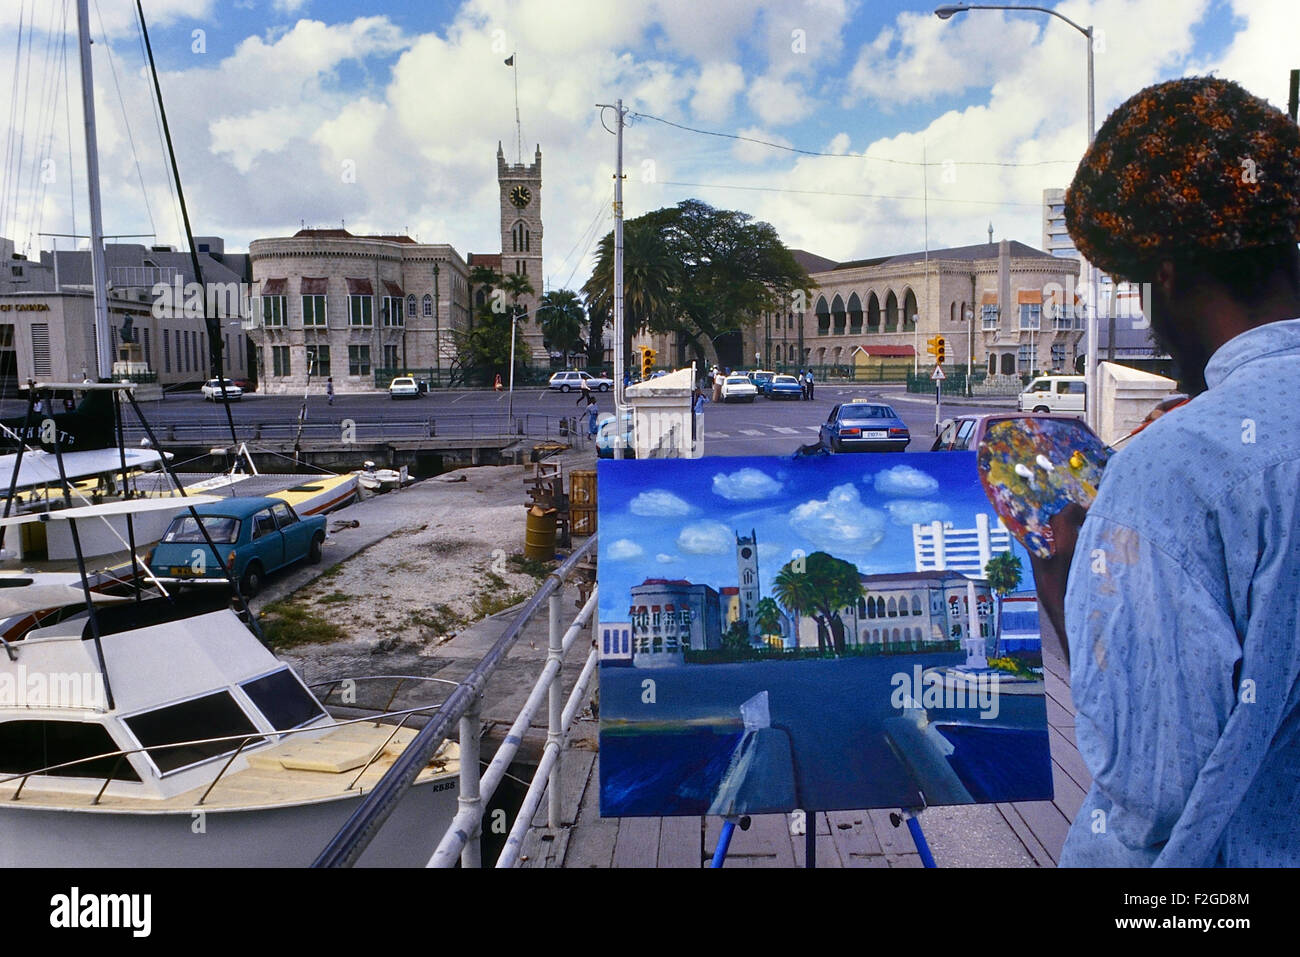 Bajan locale fine artist painting l'édifice du Parlement. Bridgetown. La Barbade. Caraïbes Banque D'Images